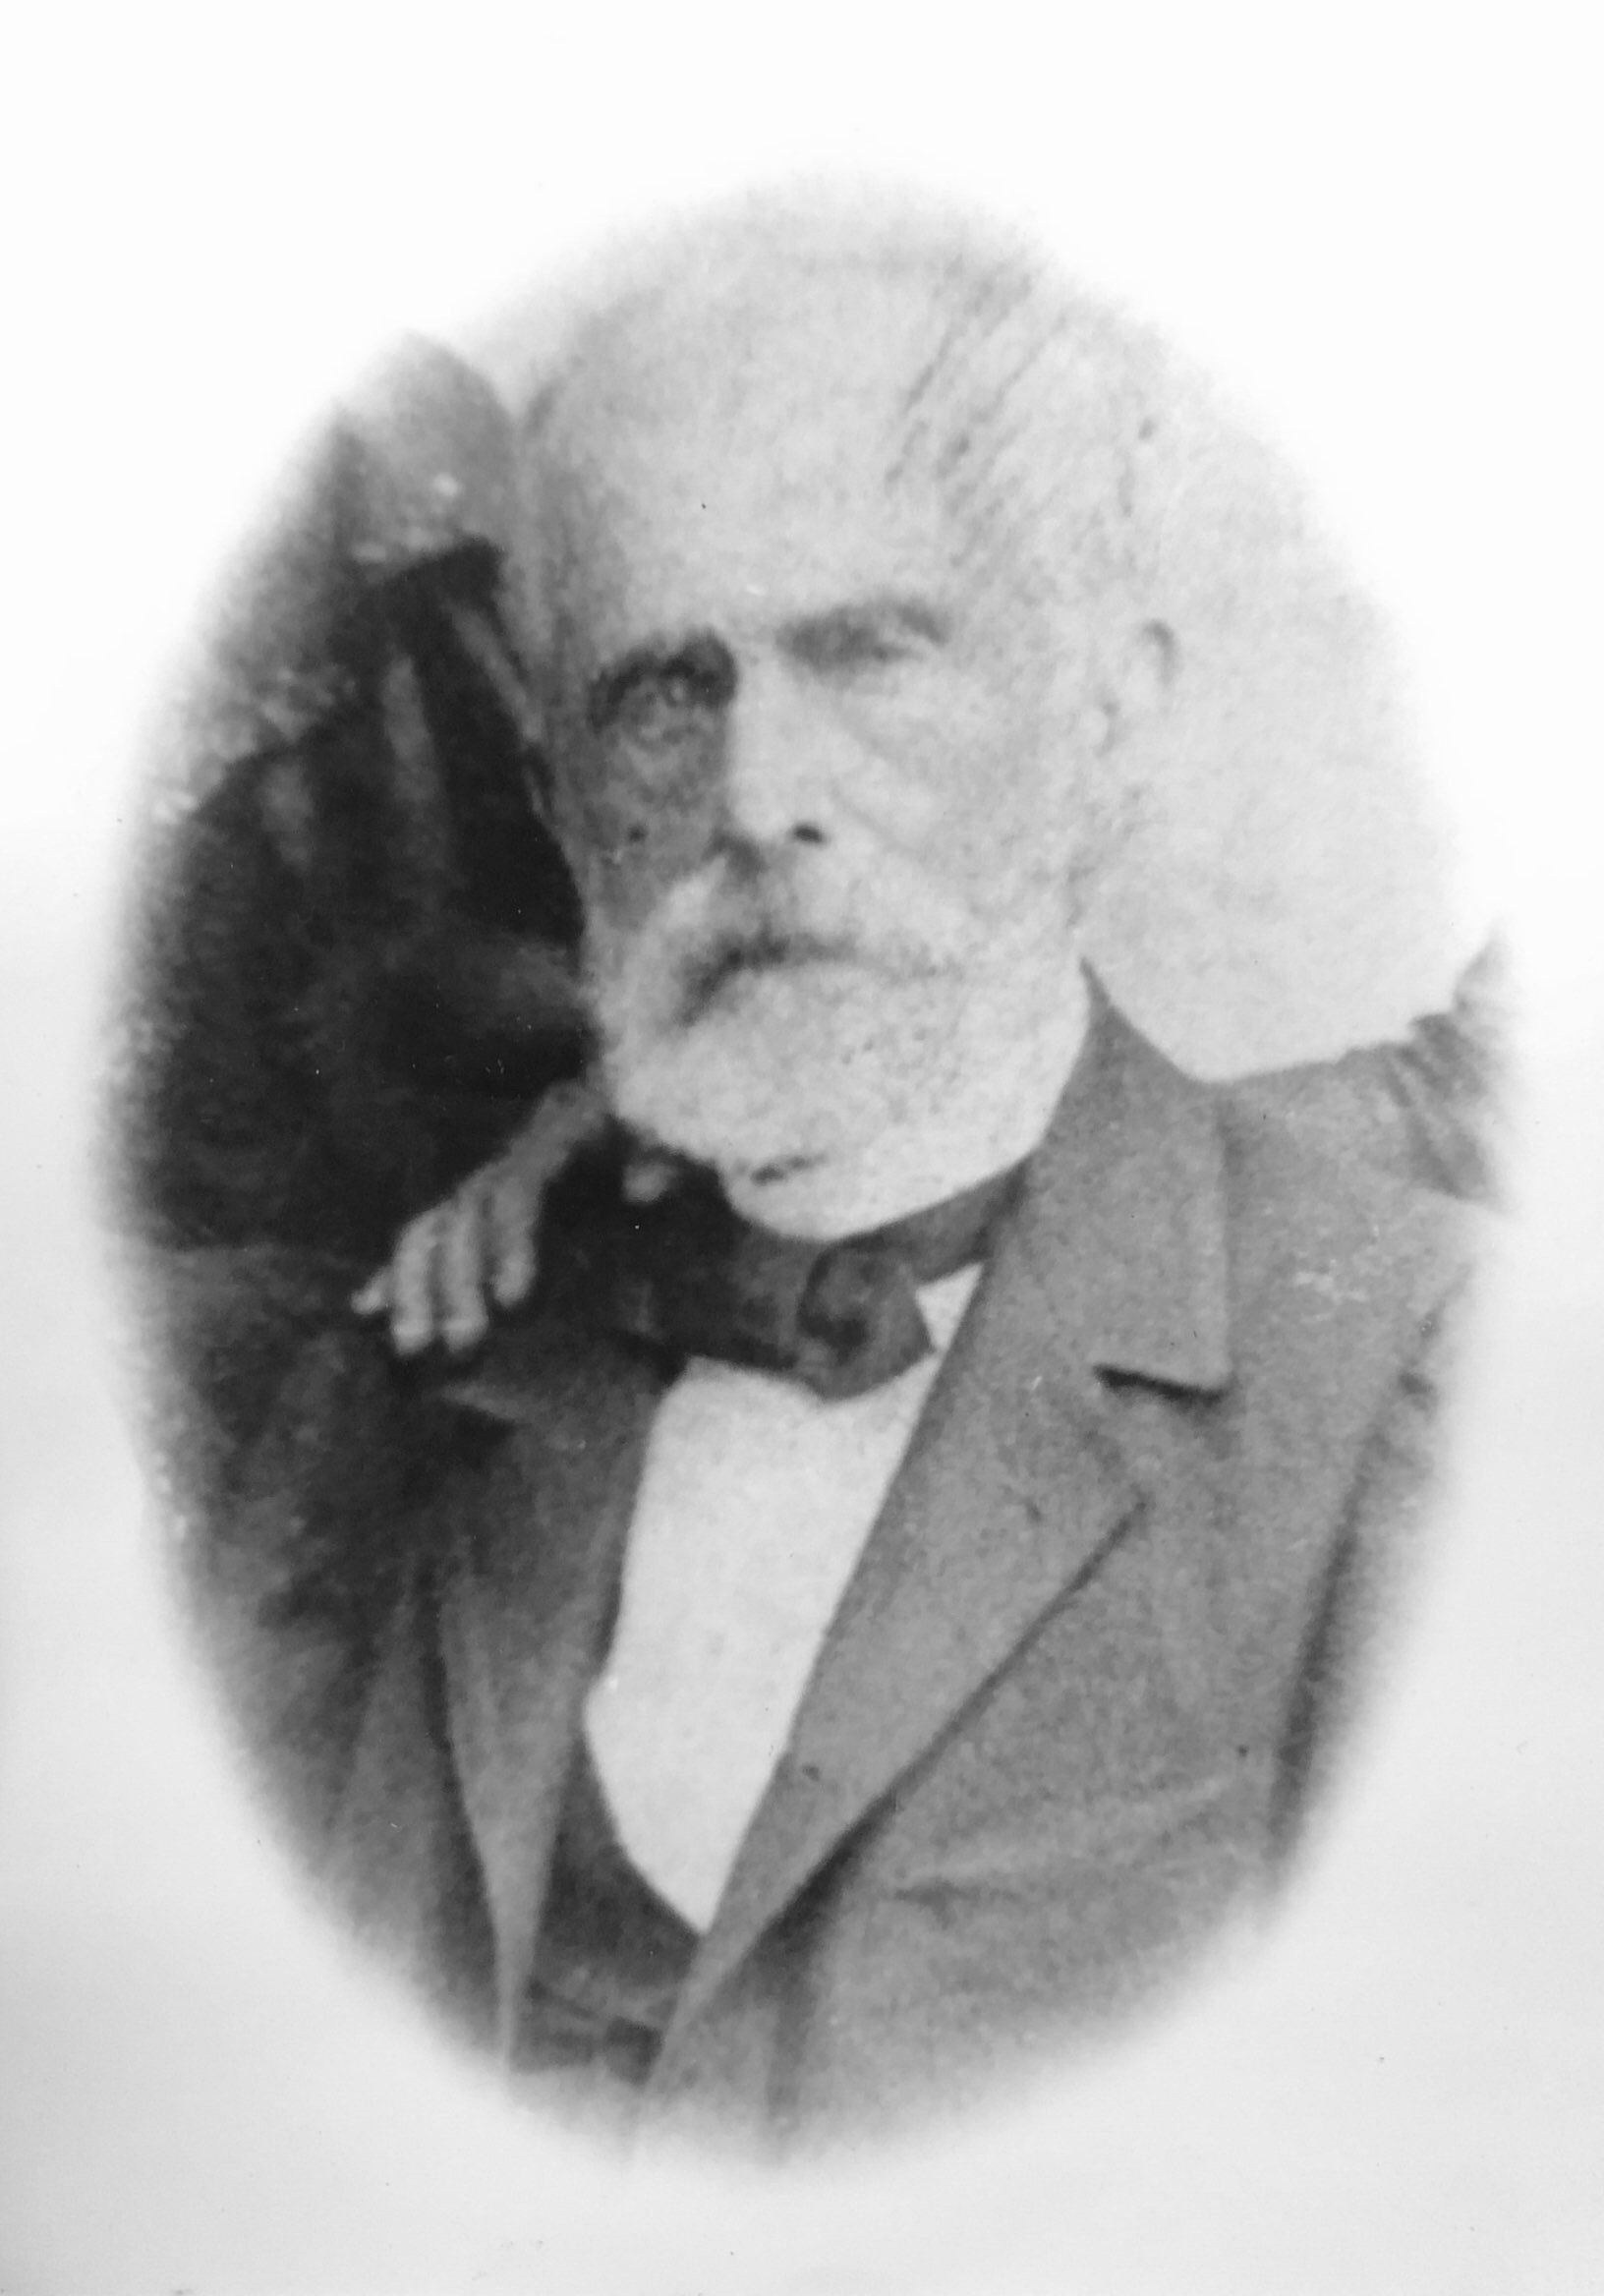 Vicente Ferreira de Paiva (06/01/1891 - 23/03; 23/05/1894 - 23/05/1895